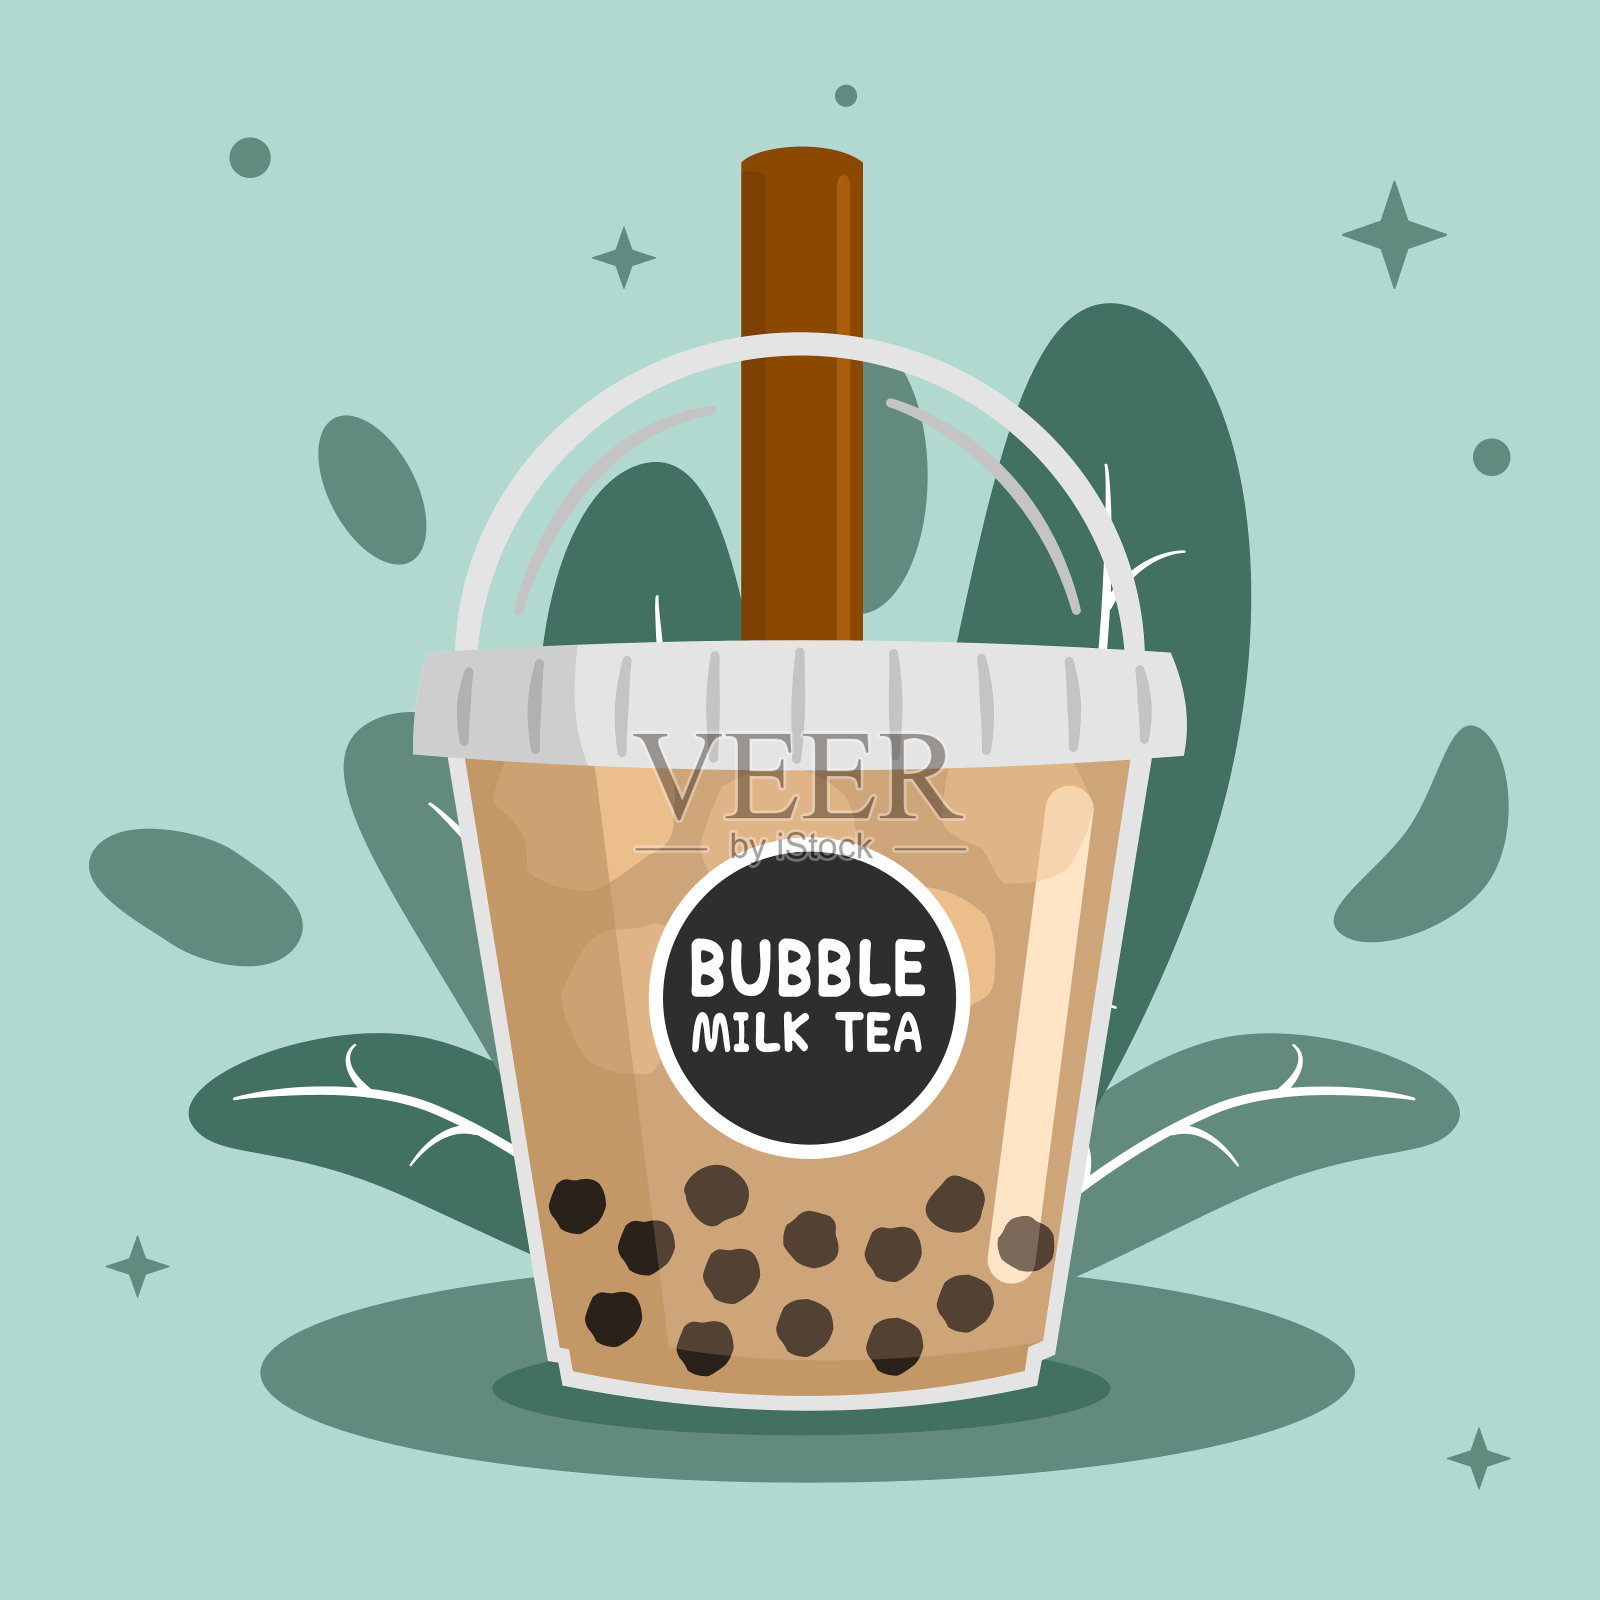 用棕色吸管泡奶茶，用带有树叶和绿色背景的塑料杯盛冰。矢量插画平面设计。插画图片素材